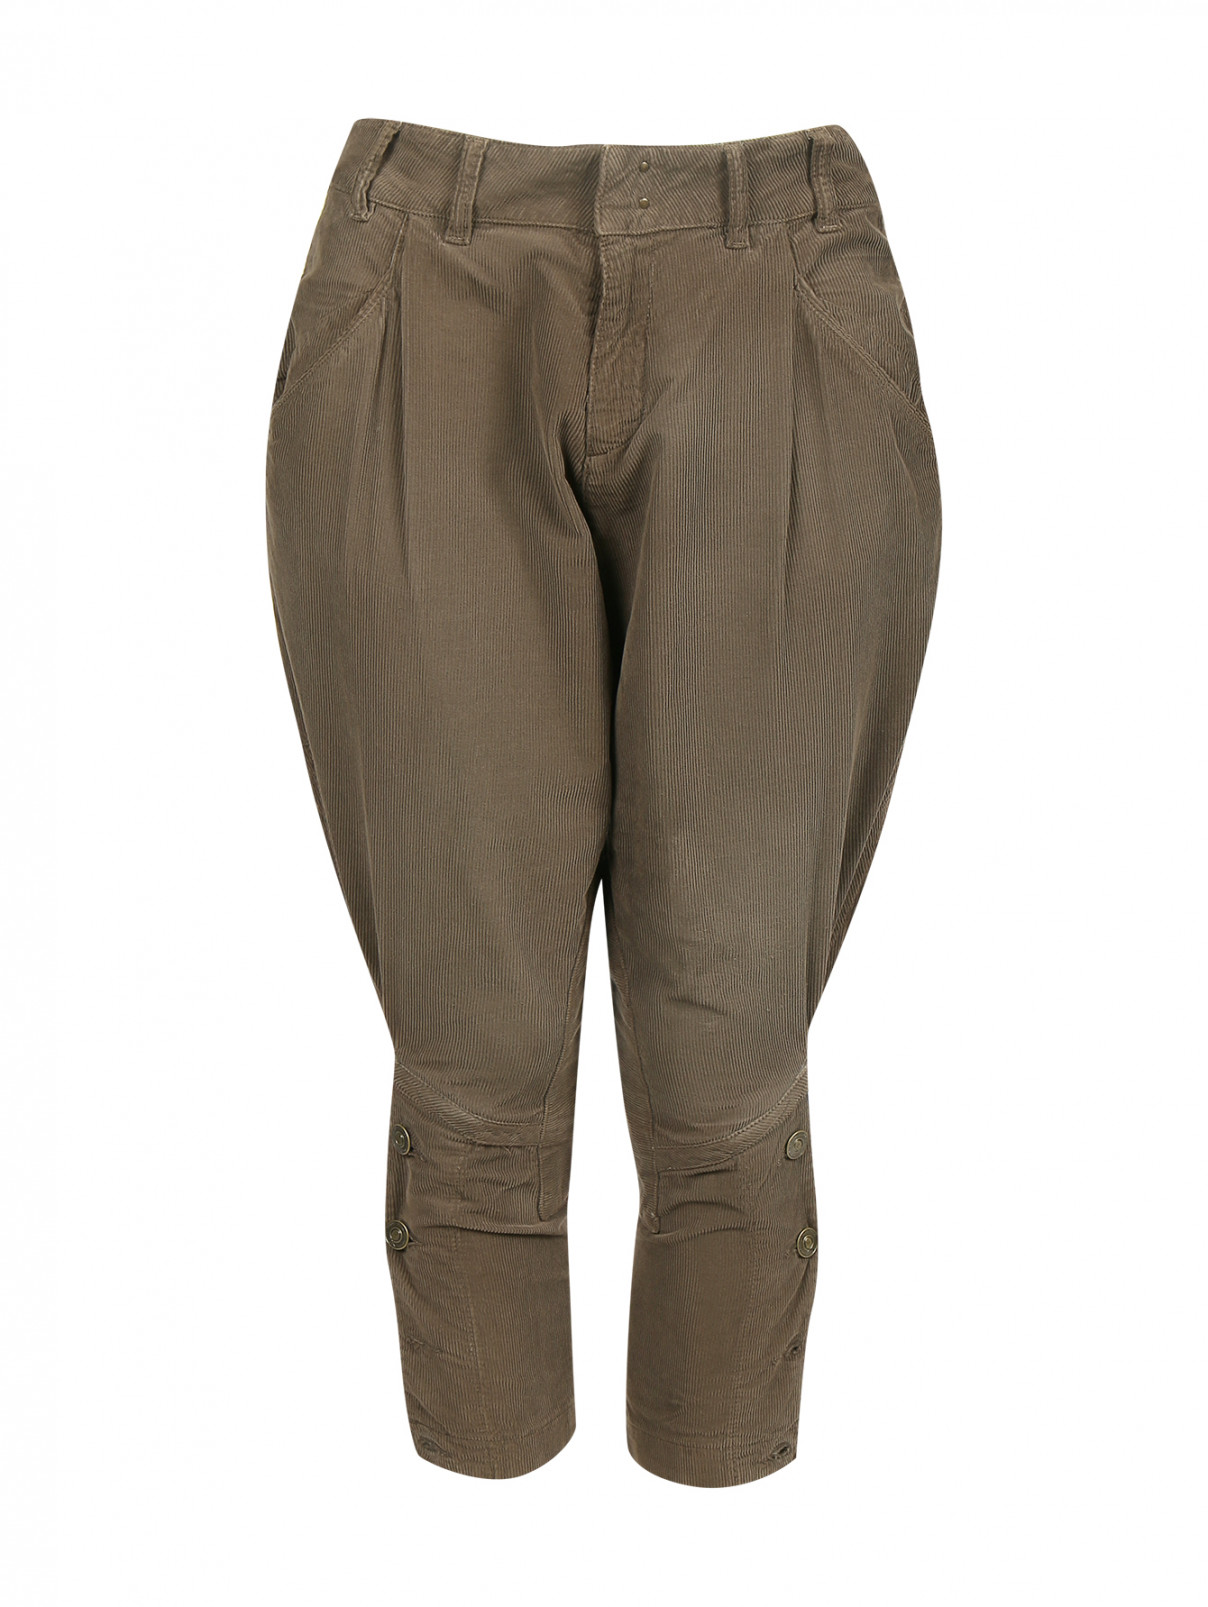 Укороченные брюки из хлопка MC Alexander McQueen  –  Общий вид  – Цвет:  Коричневый